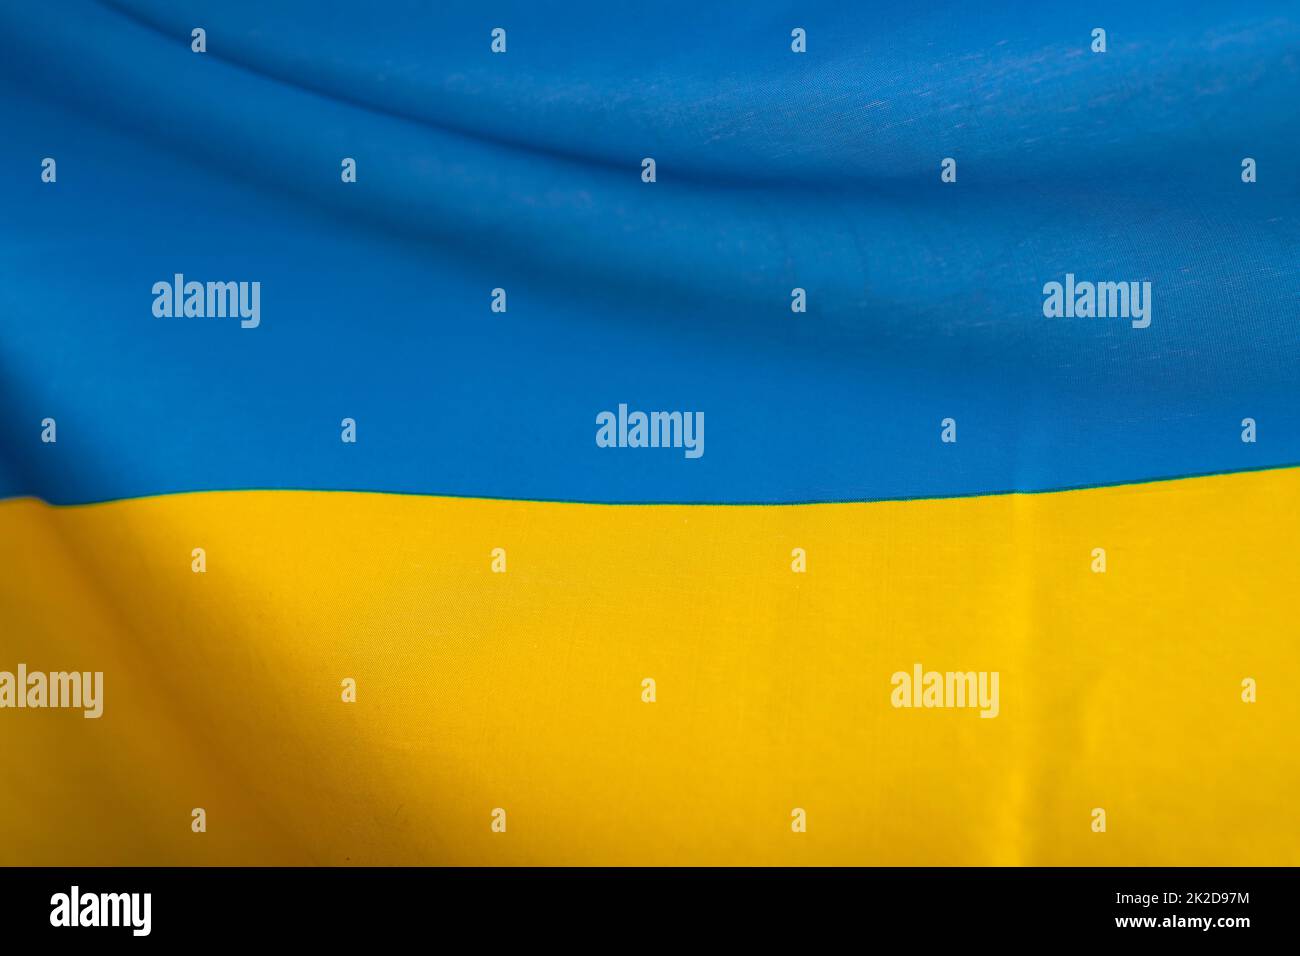 Drapeau national de l'Ukraine toile de fond textile Banque D'Images